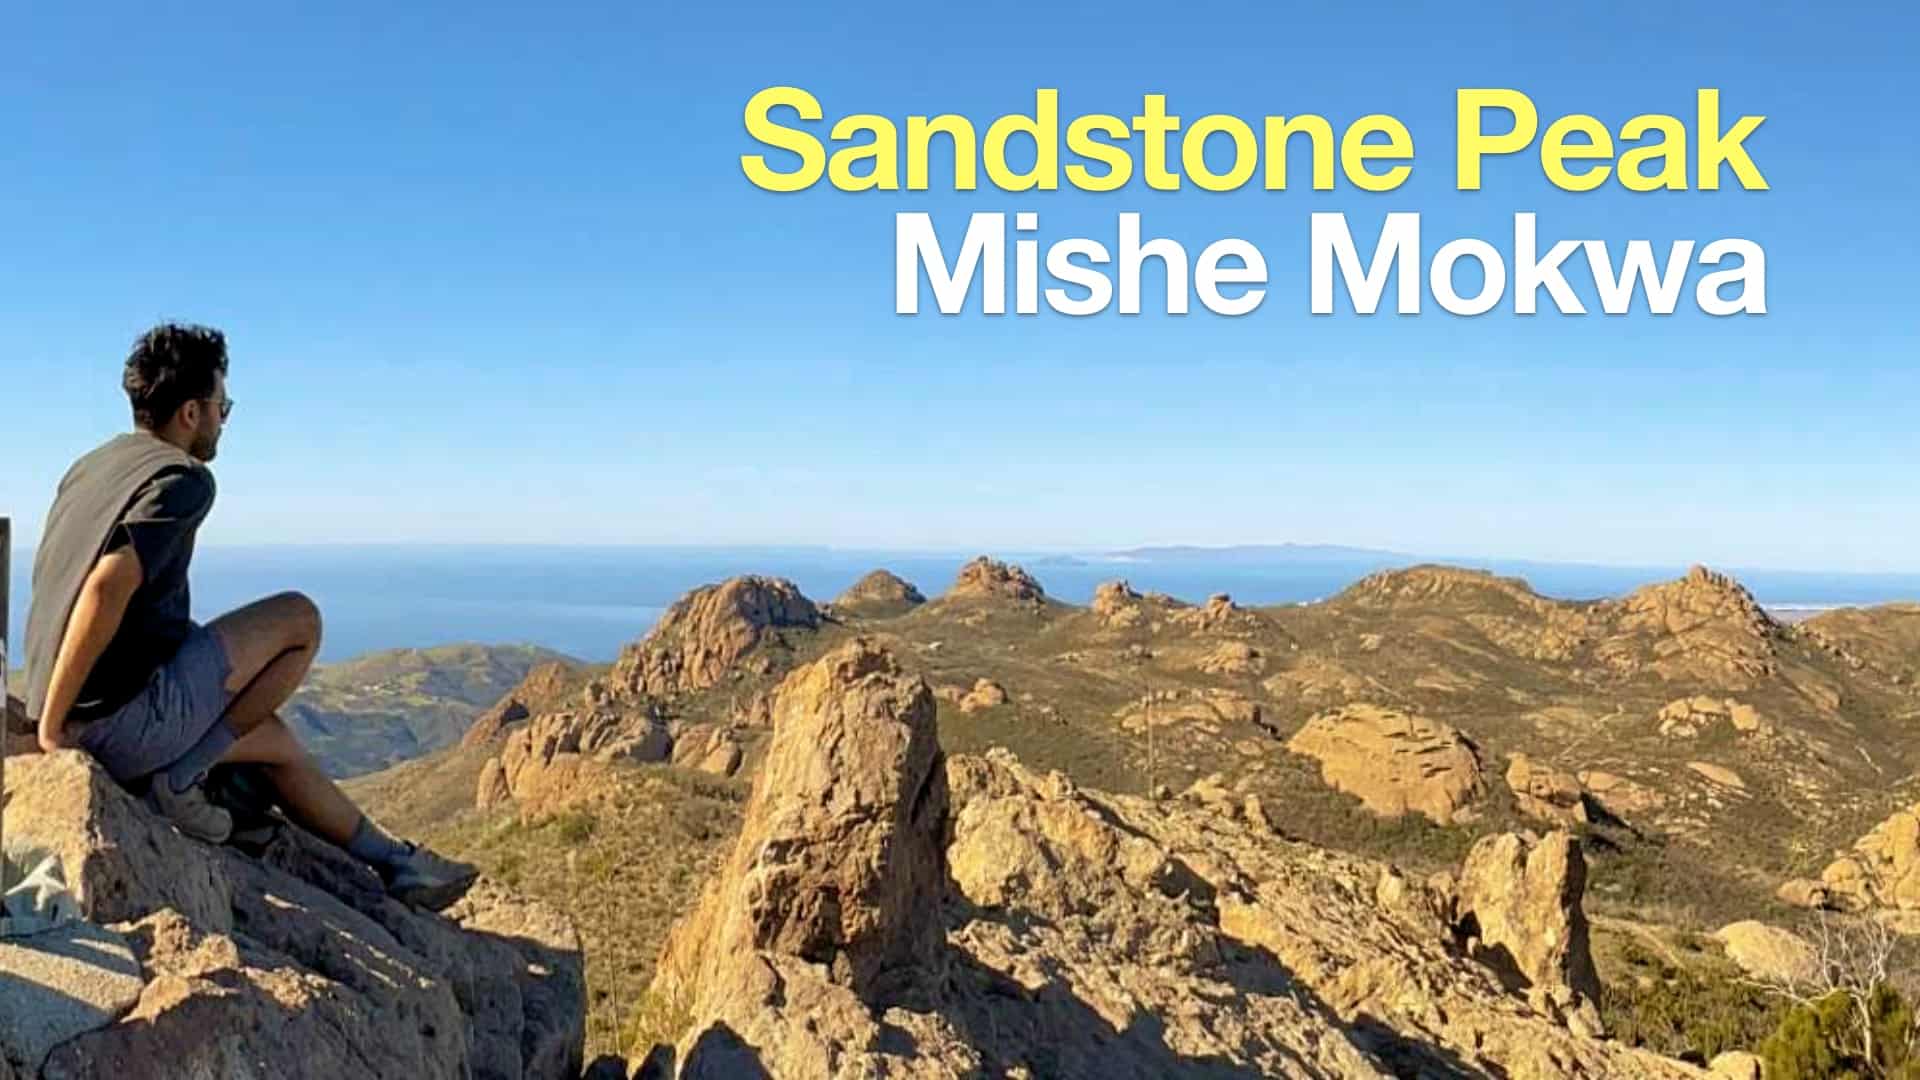 Hike Sandstone Peak on the Trail Mokwa Mishe